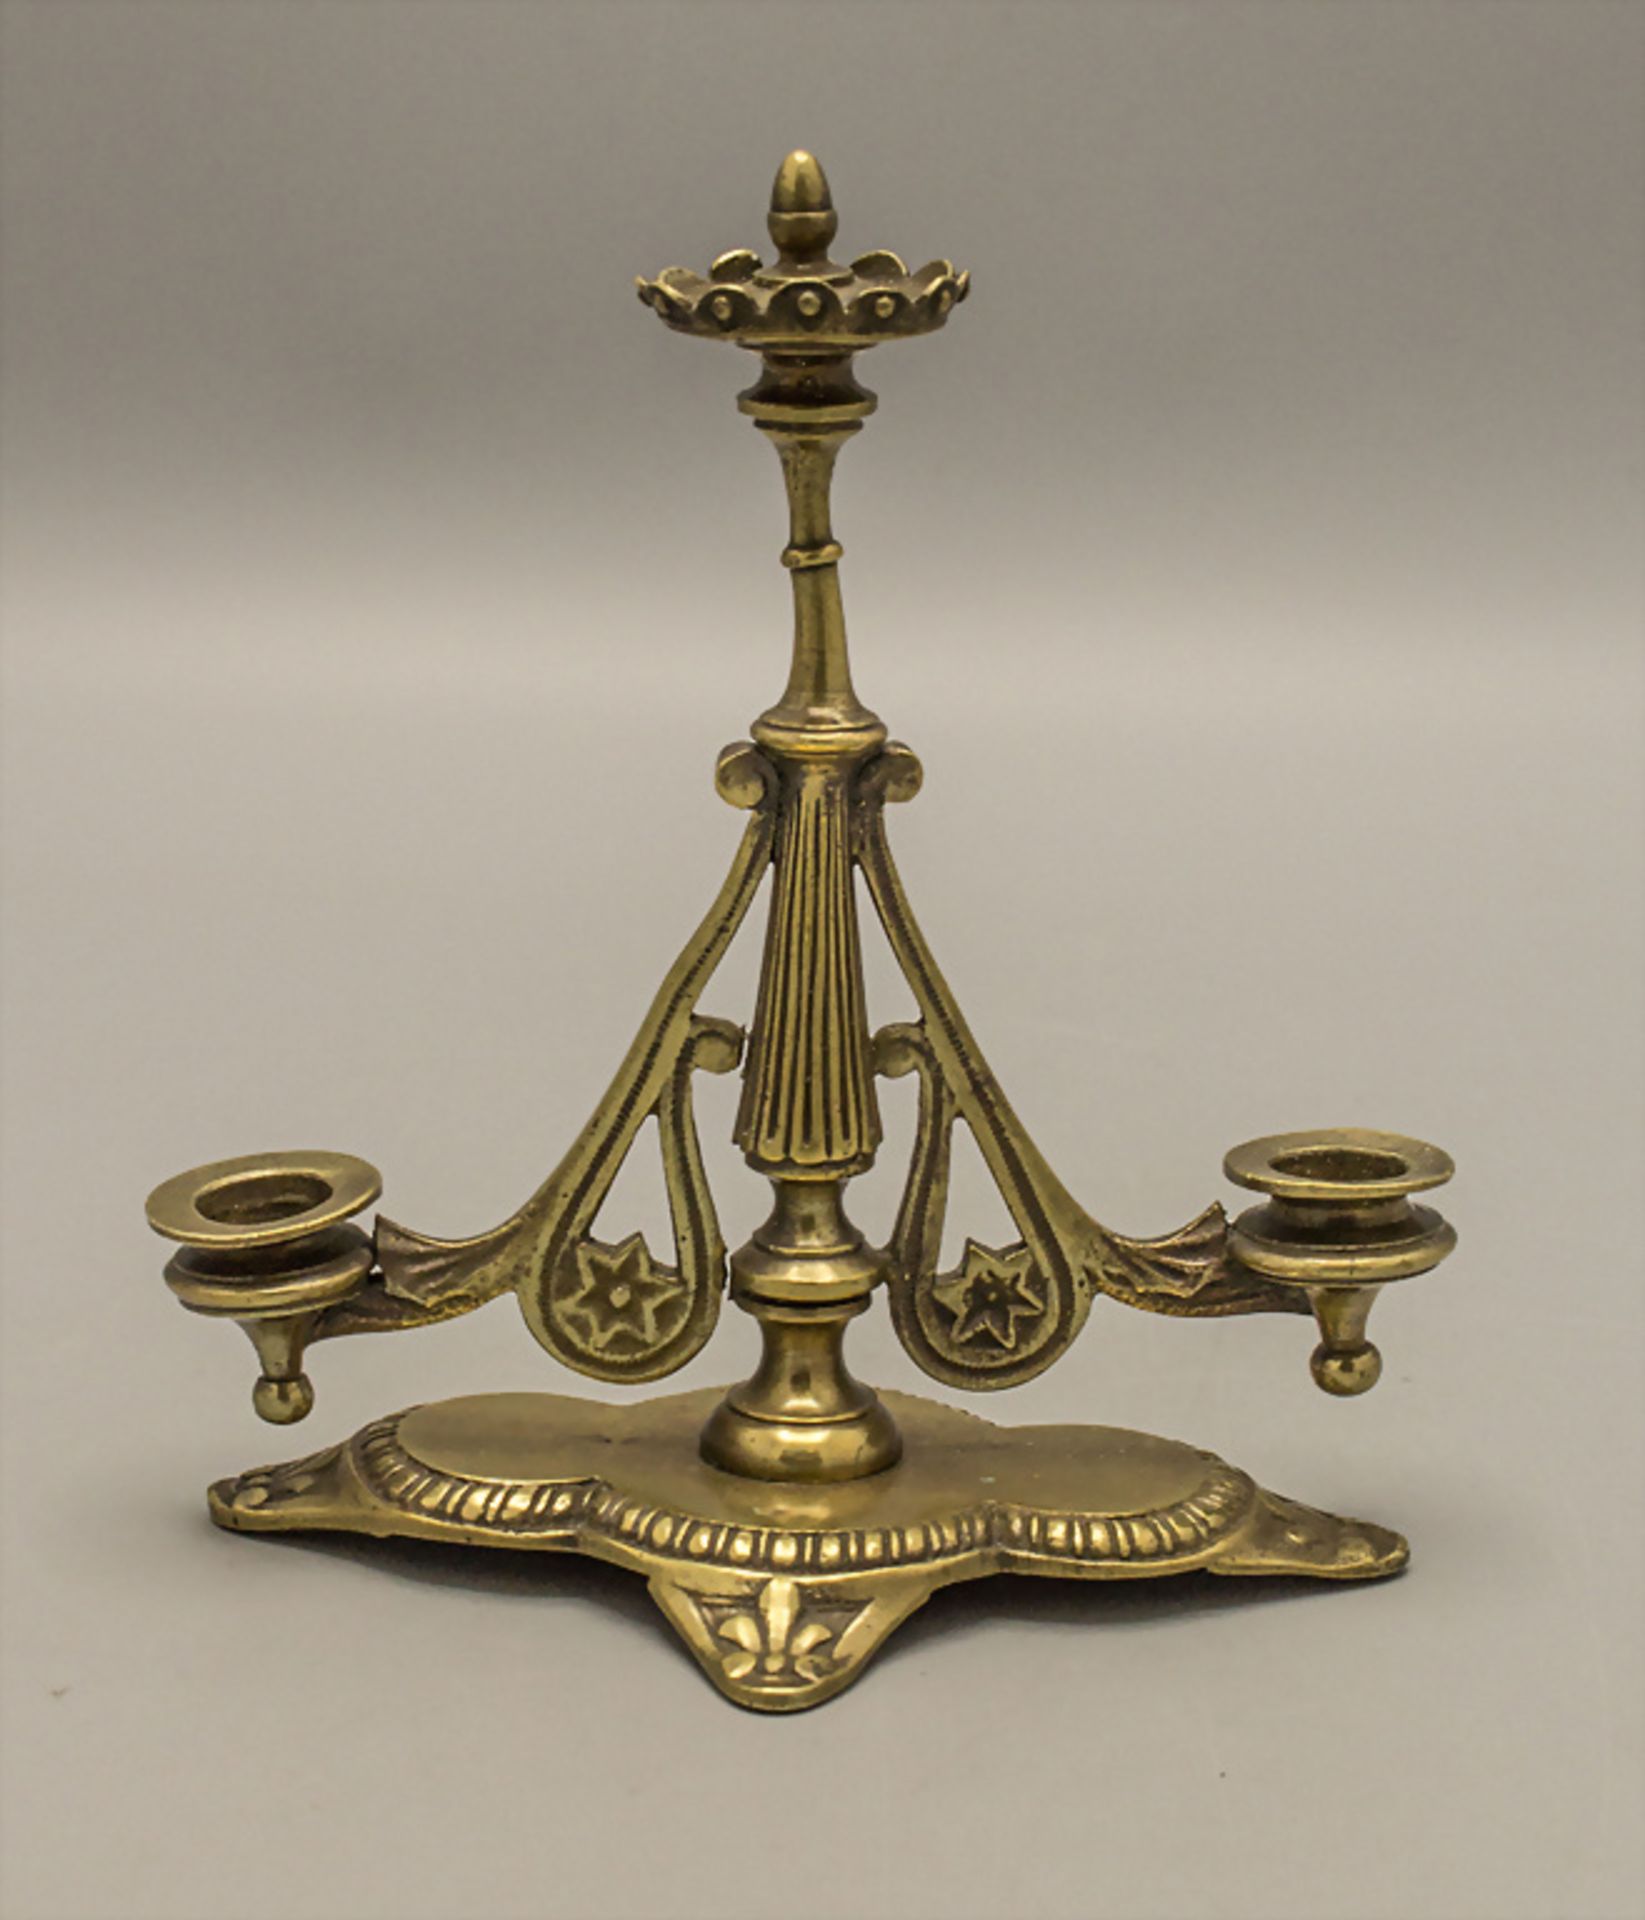 Miniatur Kerzenhalter / A miniature bronze candleholder, Frankreich, 19. Jh.